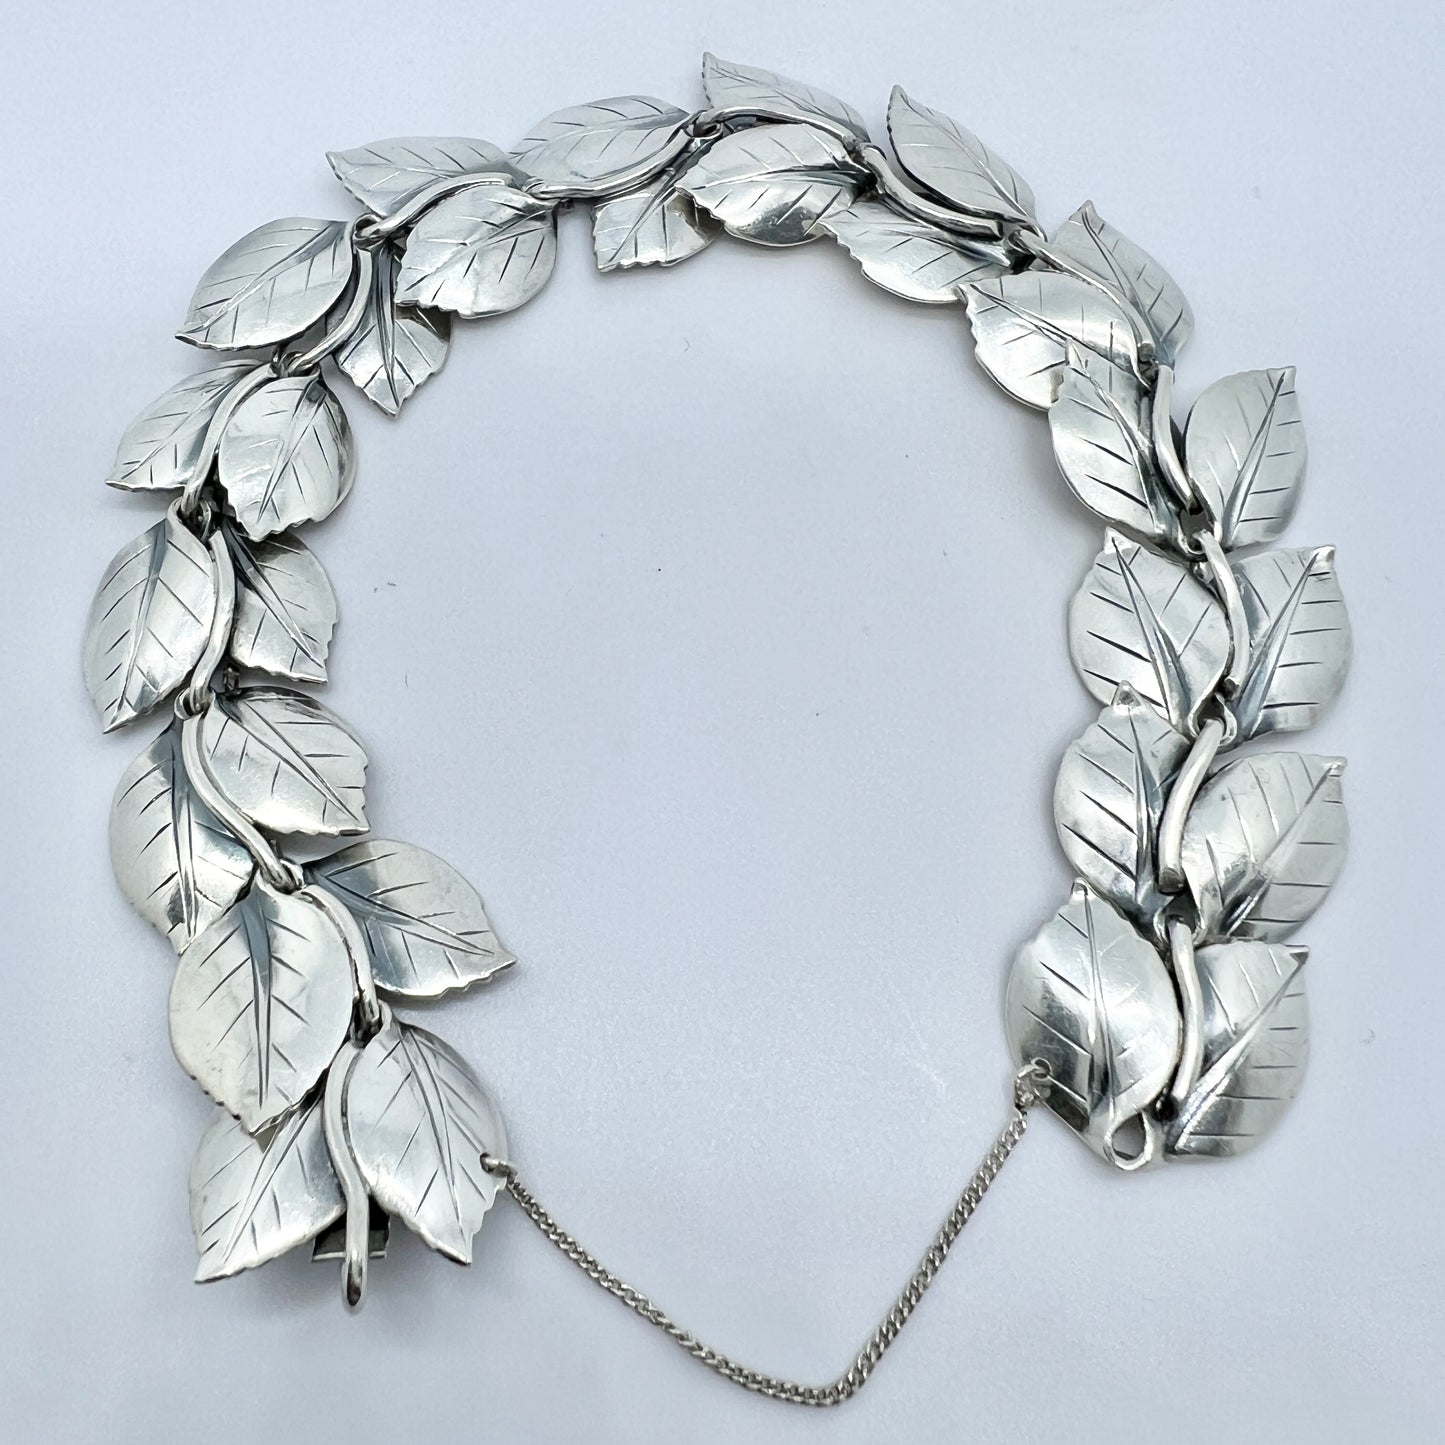 Michelsen, Sweden 1949. Vintage Sterling Silver Bracelet. Design by Gertrud Engel